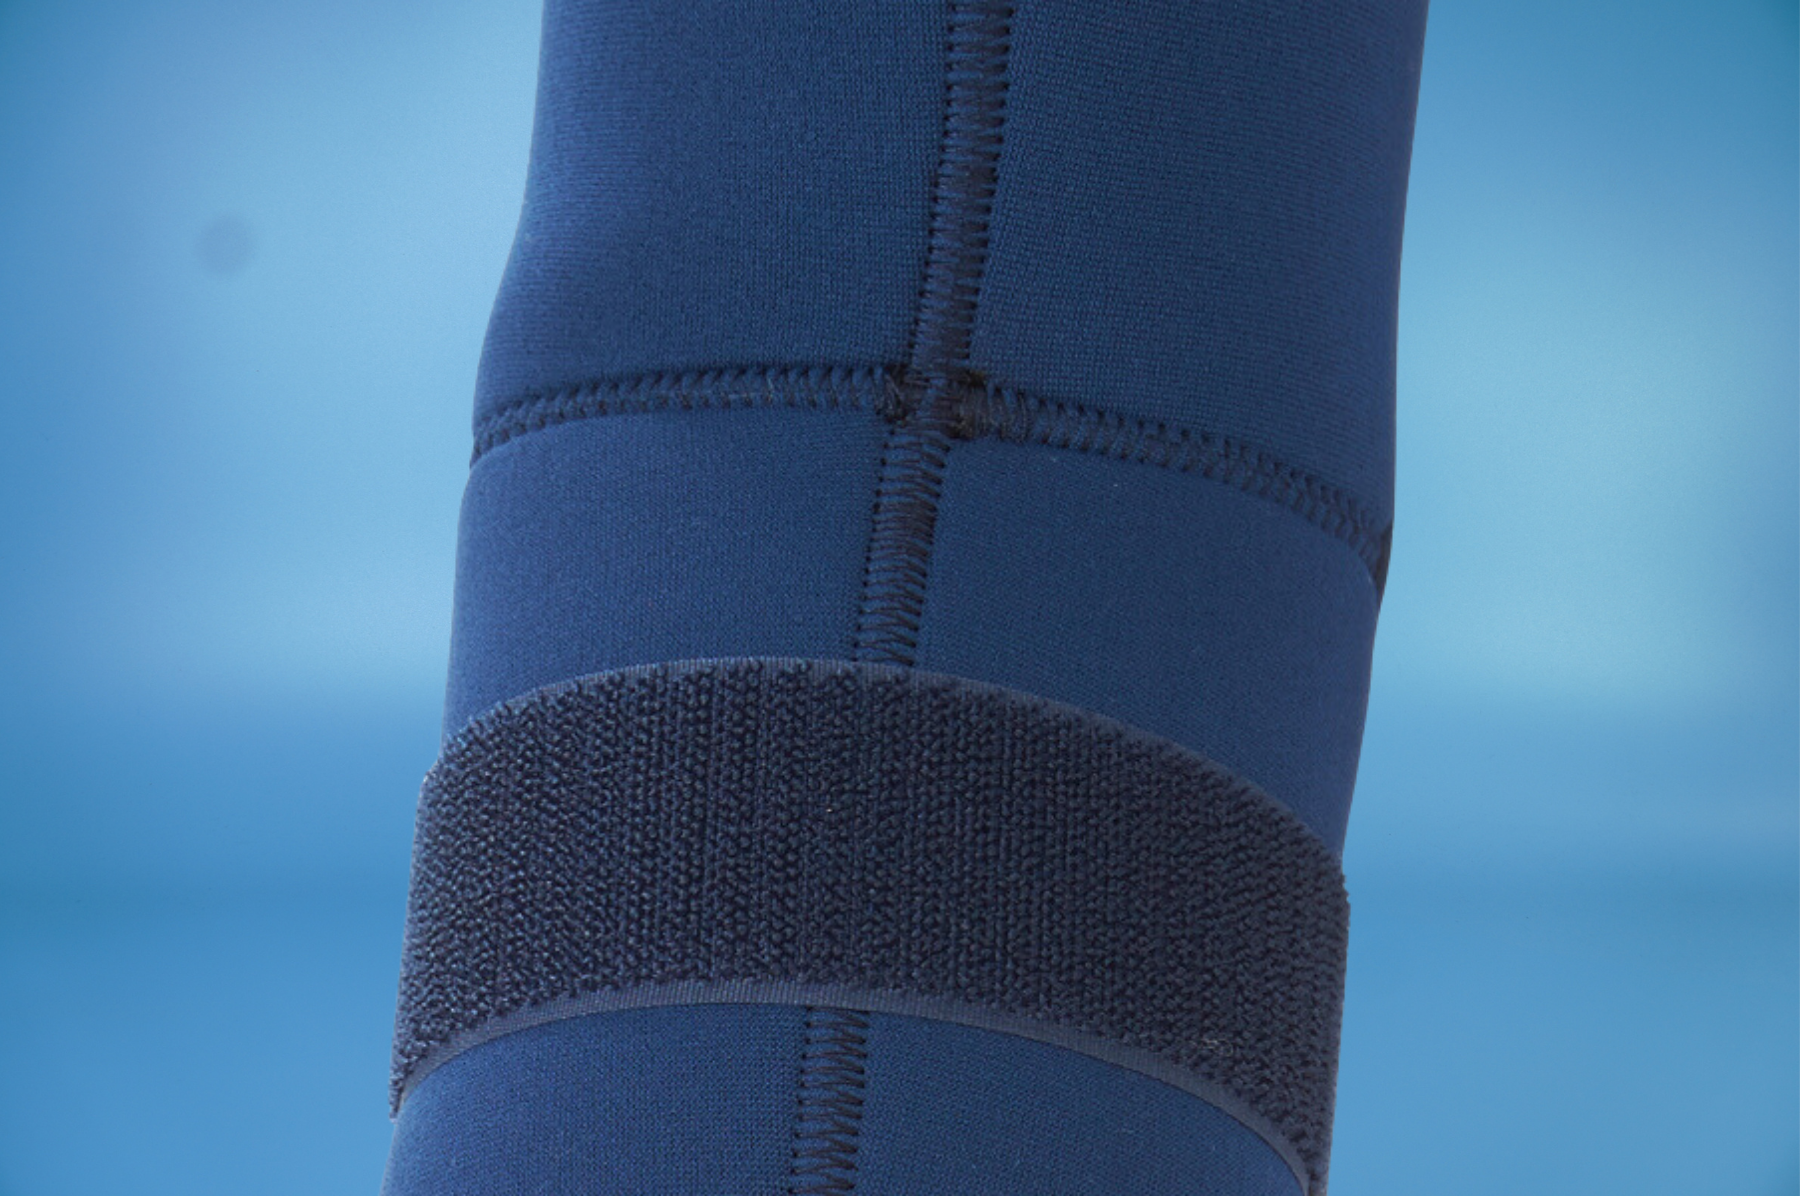  Bao đeo bảo vệ khuỷu tay Dr.Med DR-E003 hỗ trợ bong gân, chấn thương khuỷu tay - 4 Size 